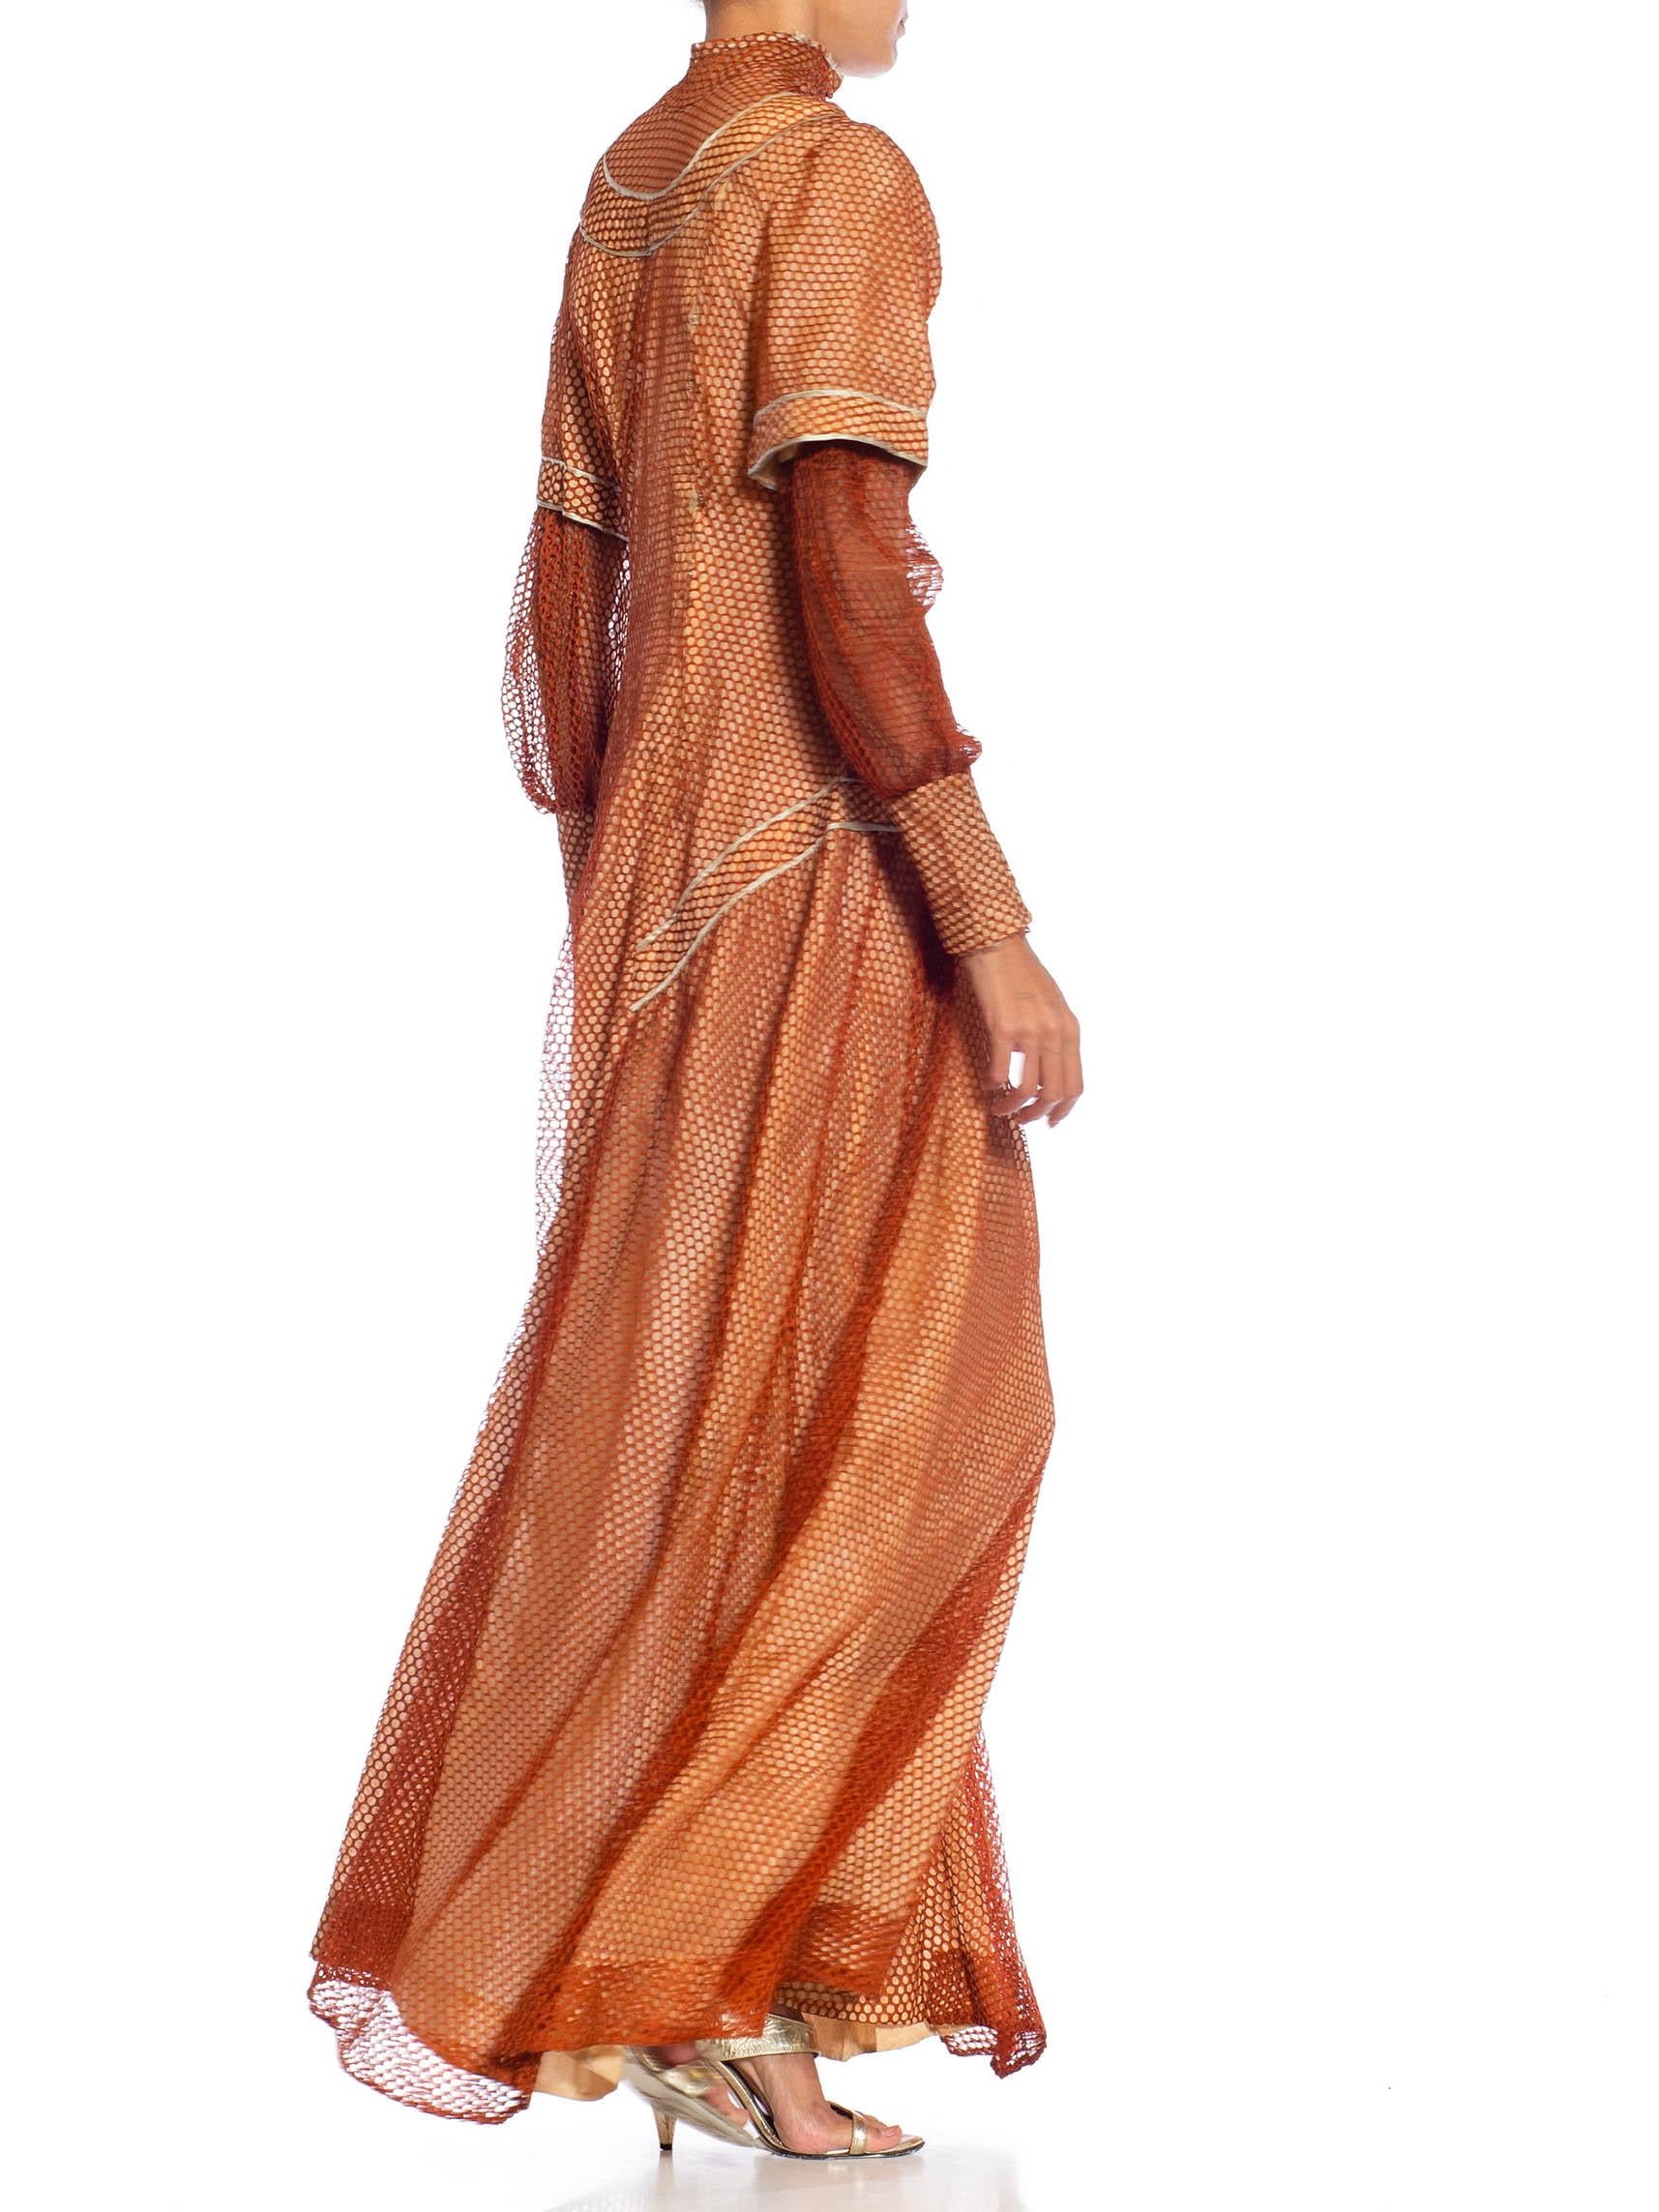 Robe édouardienne en maille de soie bronze sur soie rose pâle avec manches longues en vente 5